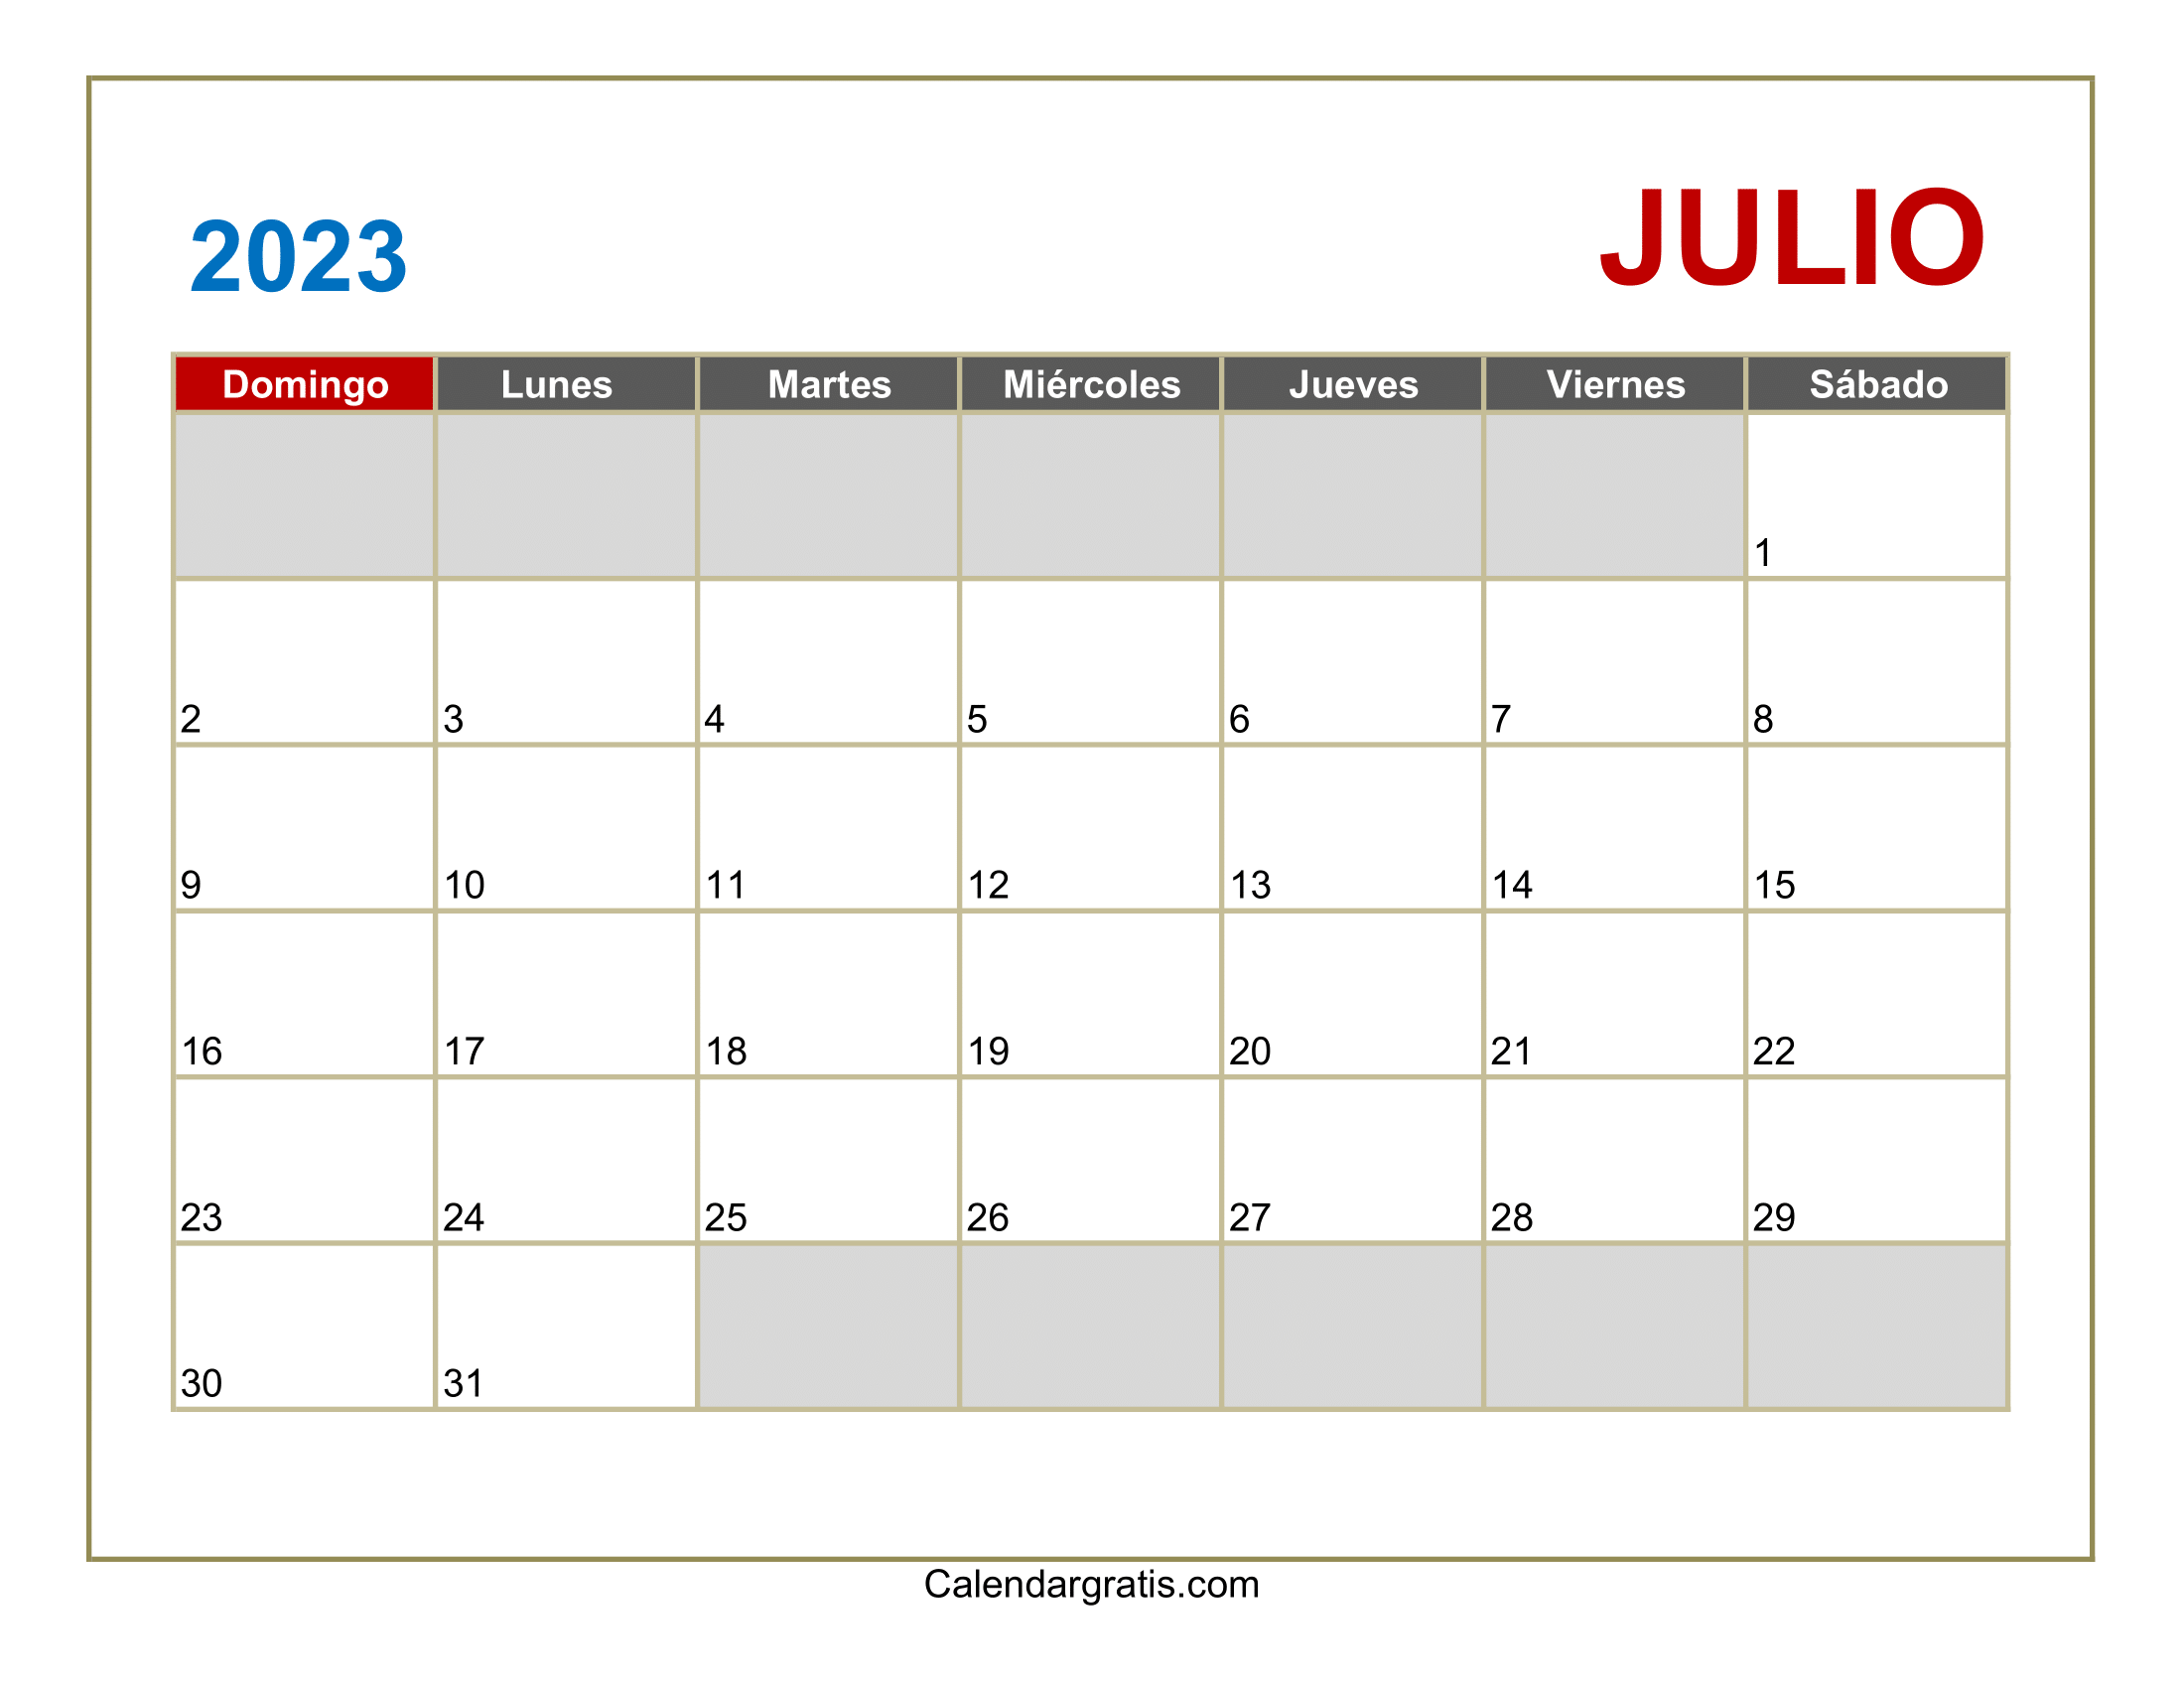 Calendario Julio 2023 Para Imprimir gratis